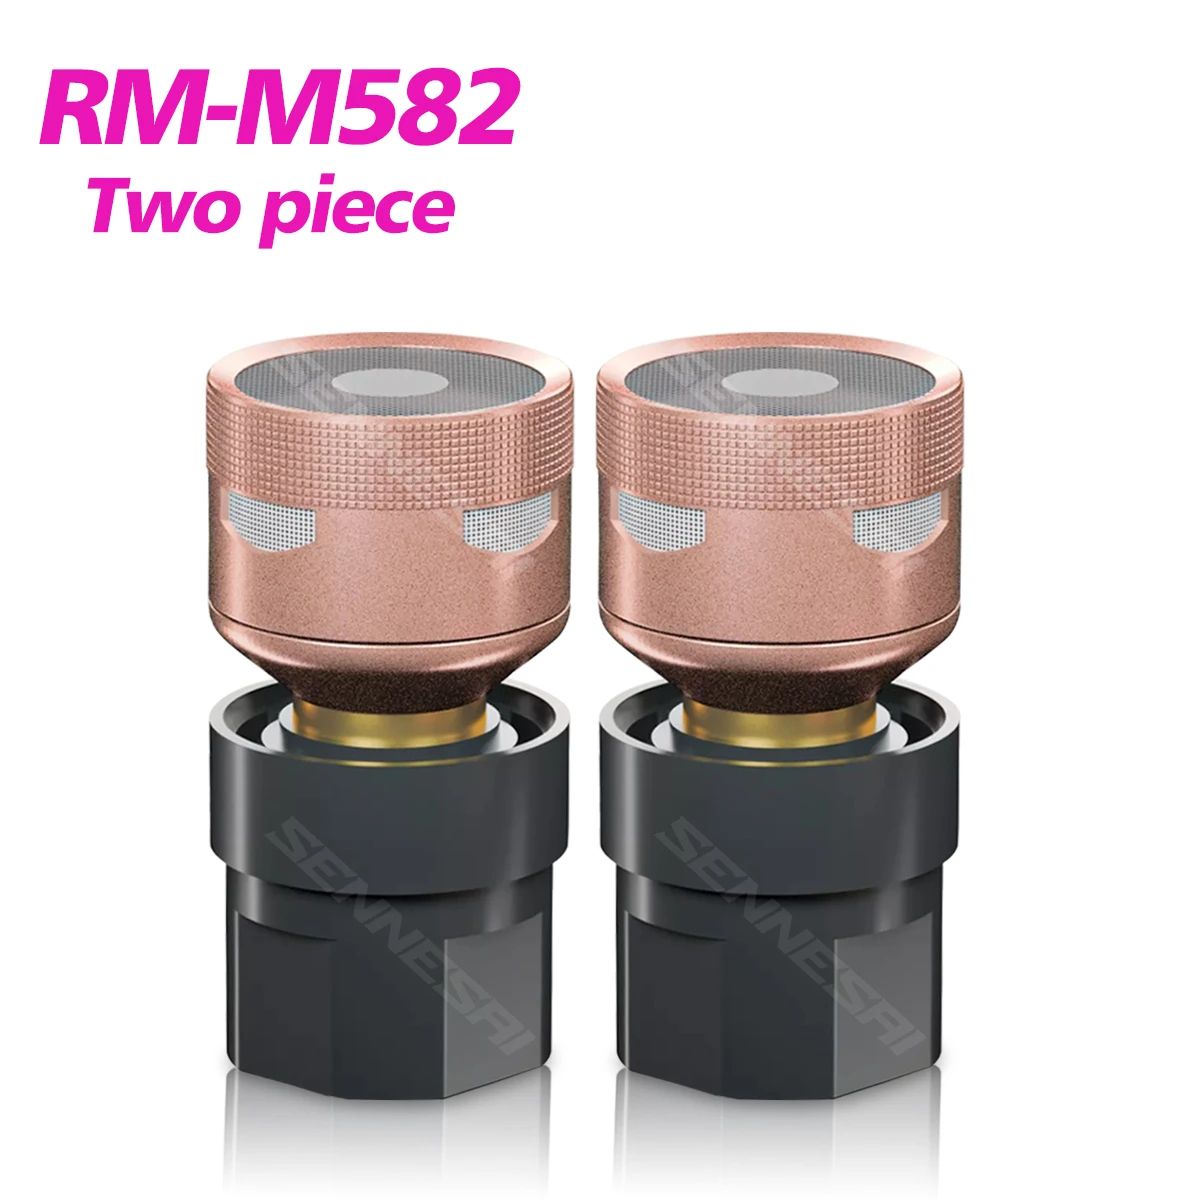 RM-M582 deux pièces